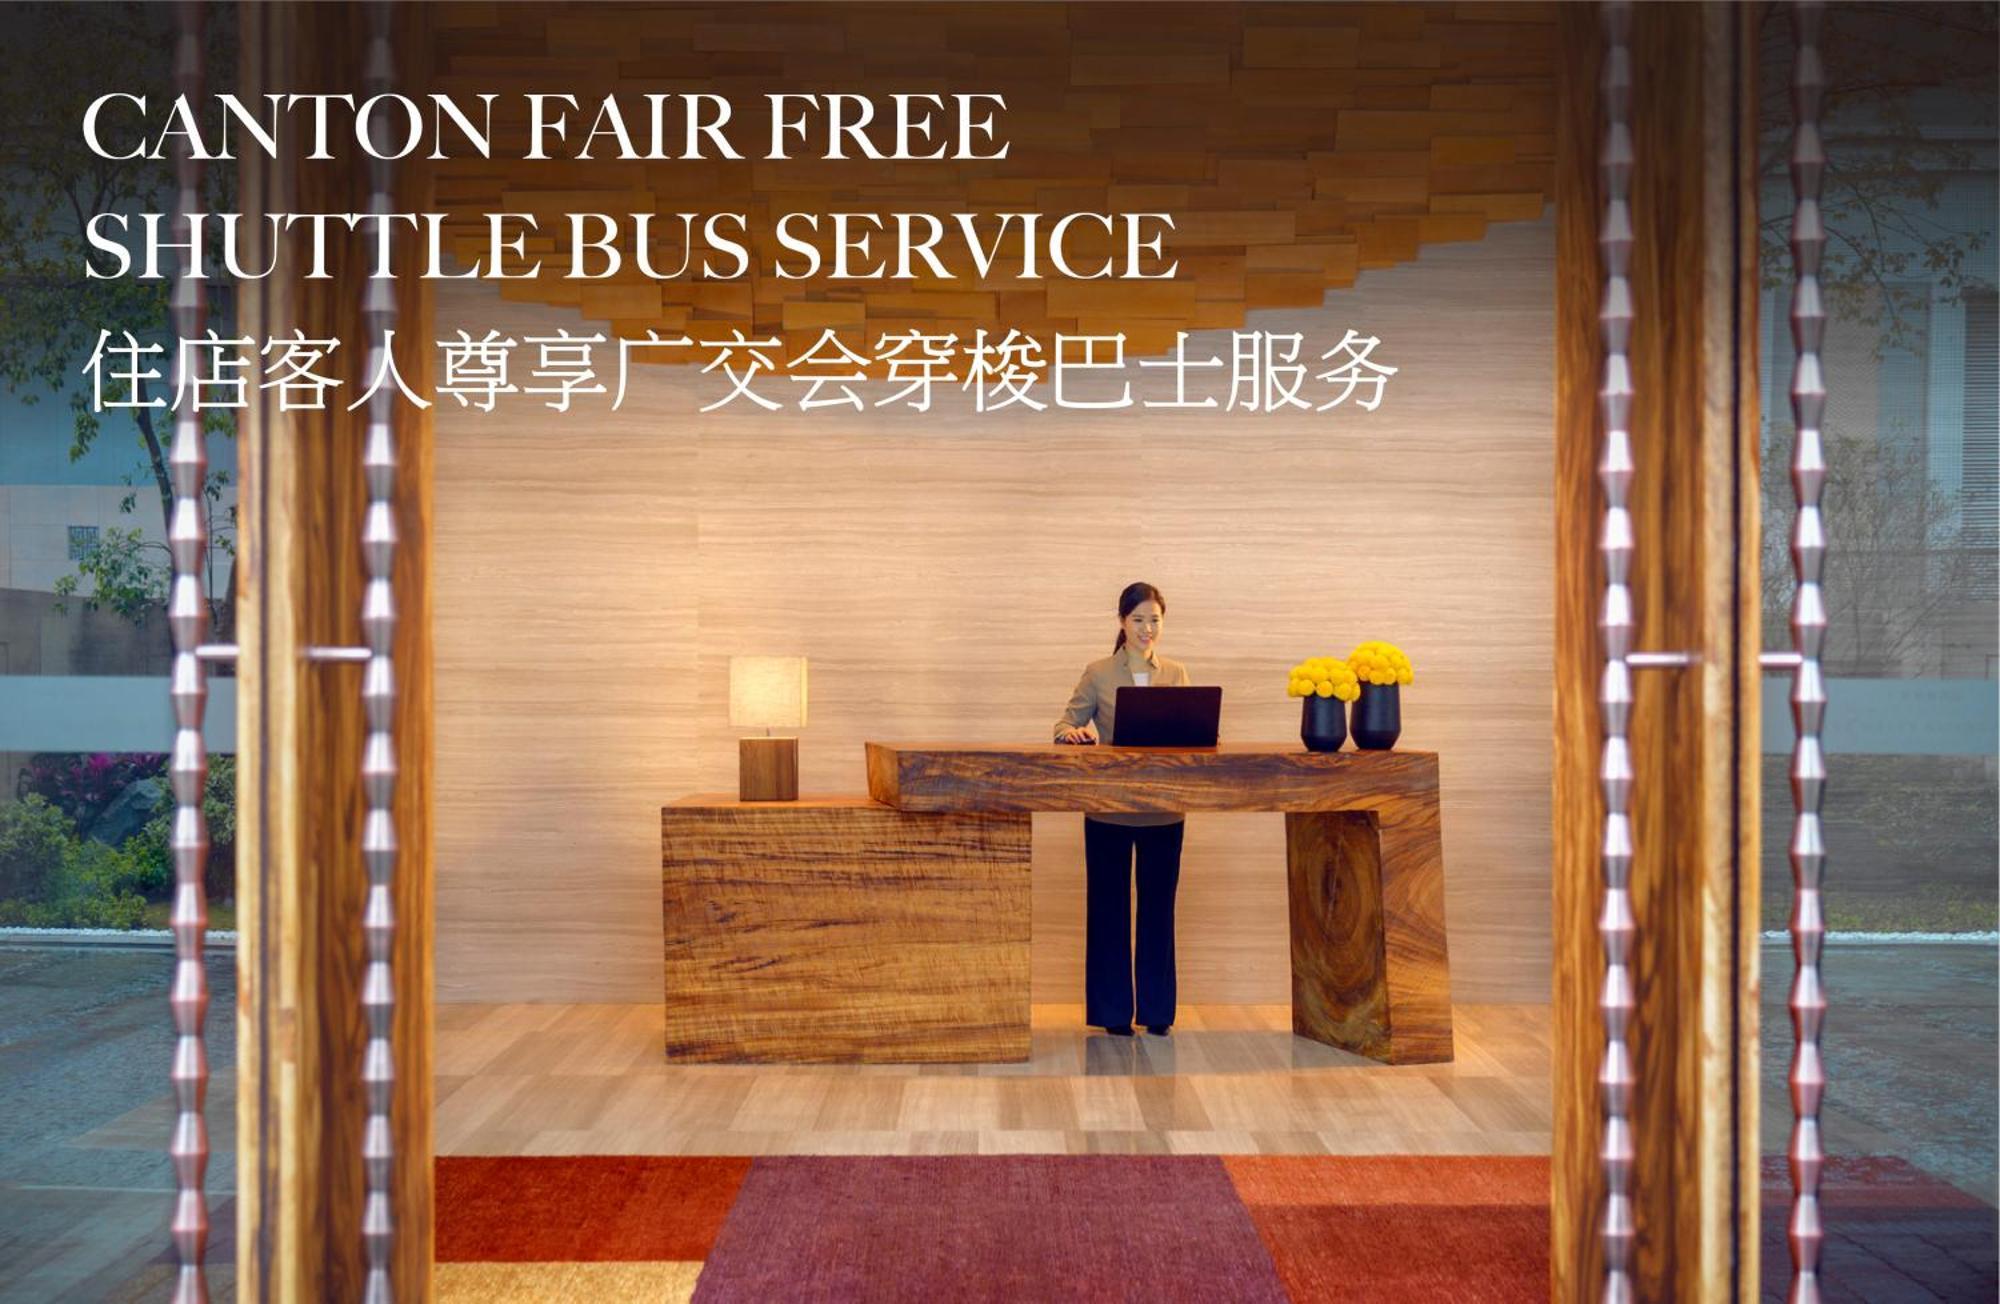 Park Hyatt Guangzhou - Free Shuttle Bus To Canton Fair Complex During Canton Fair Period Экстерьер фото